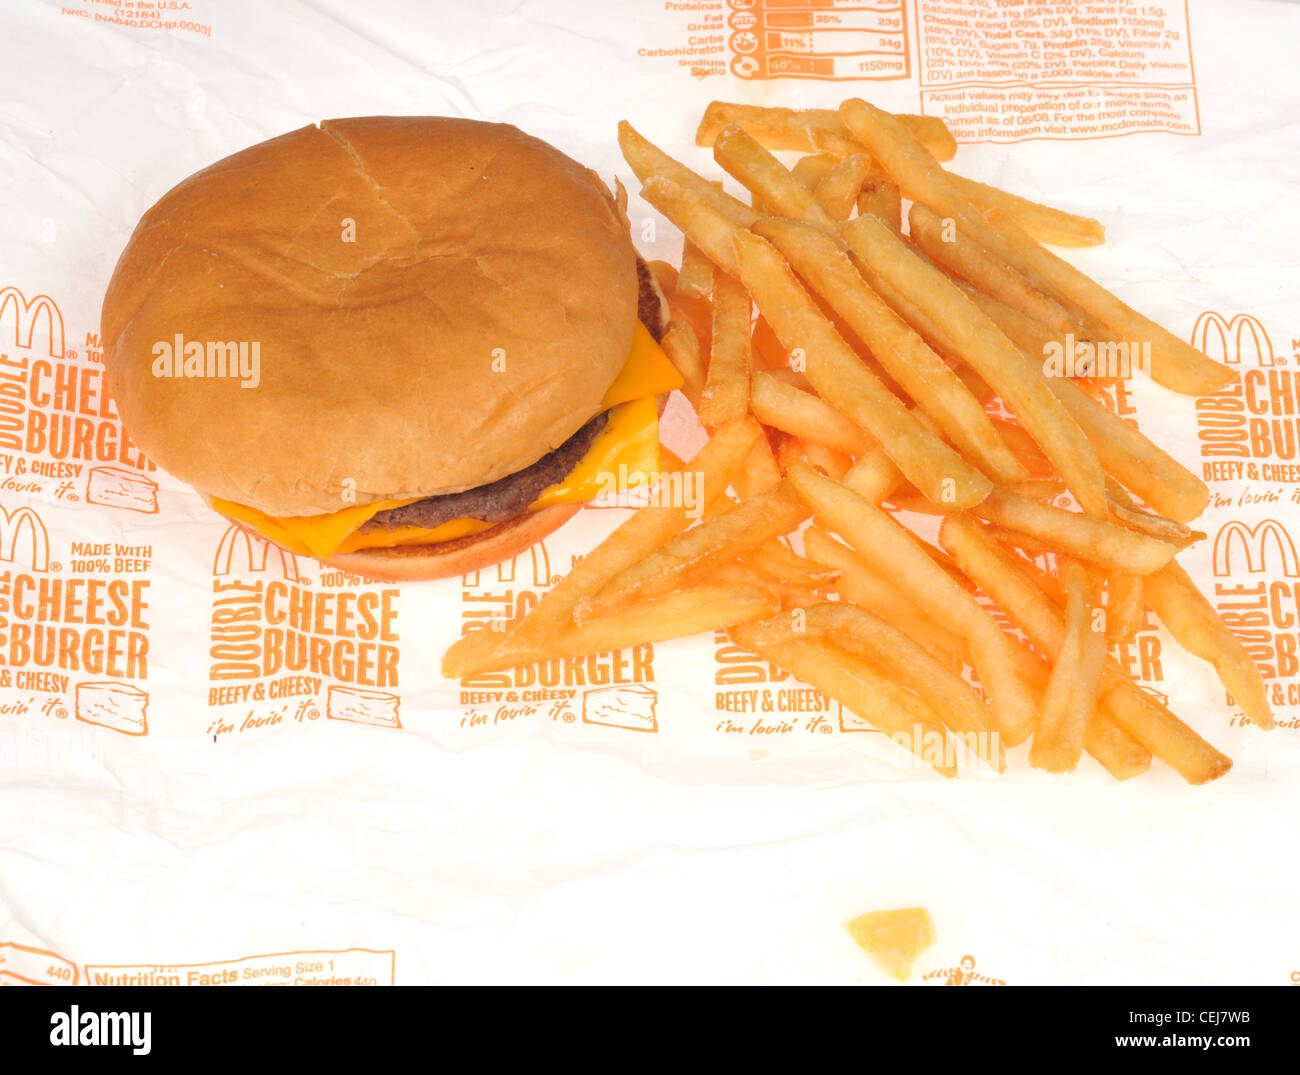 McDonalds doppelten Cheeseburger auf Papier Verpackung mit Pommes frites oder Chips auf weißem Hintergrund USA Stockfoto